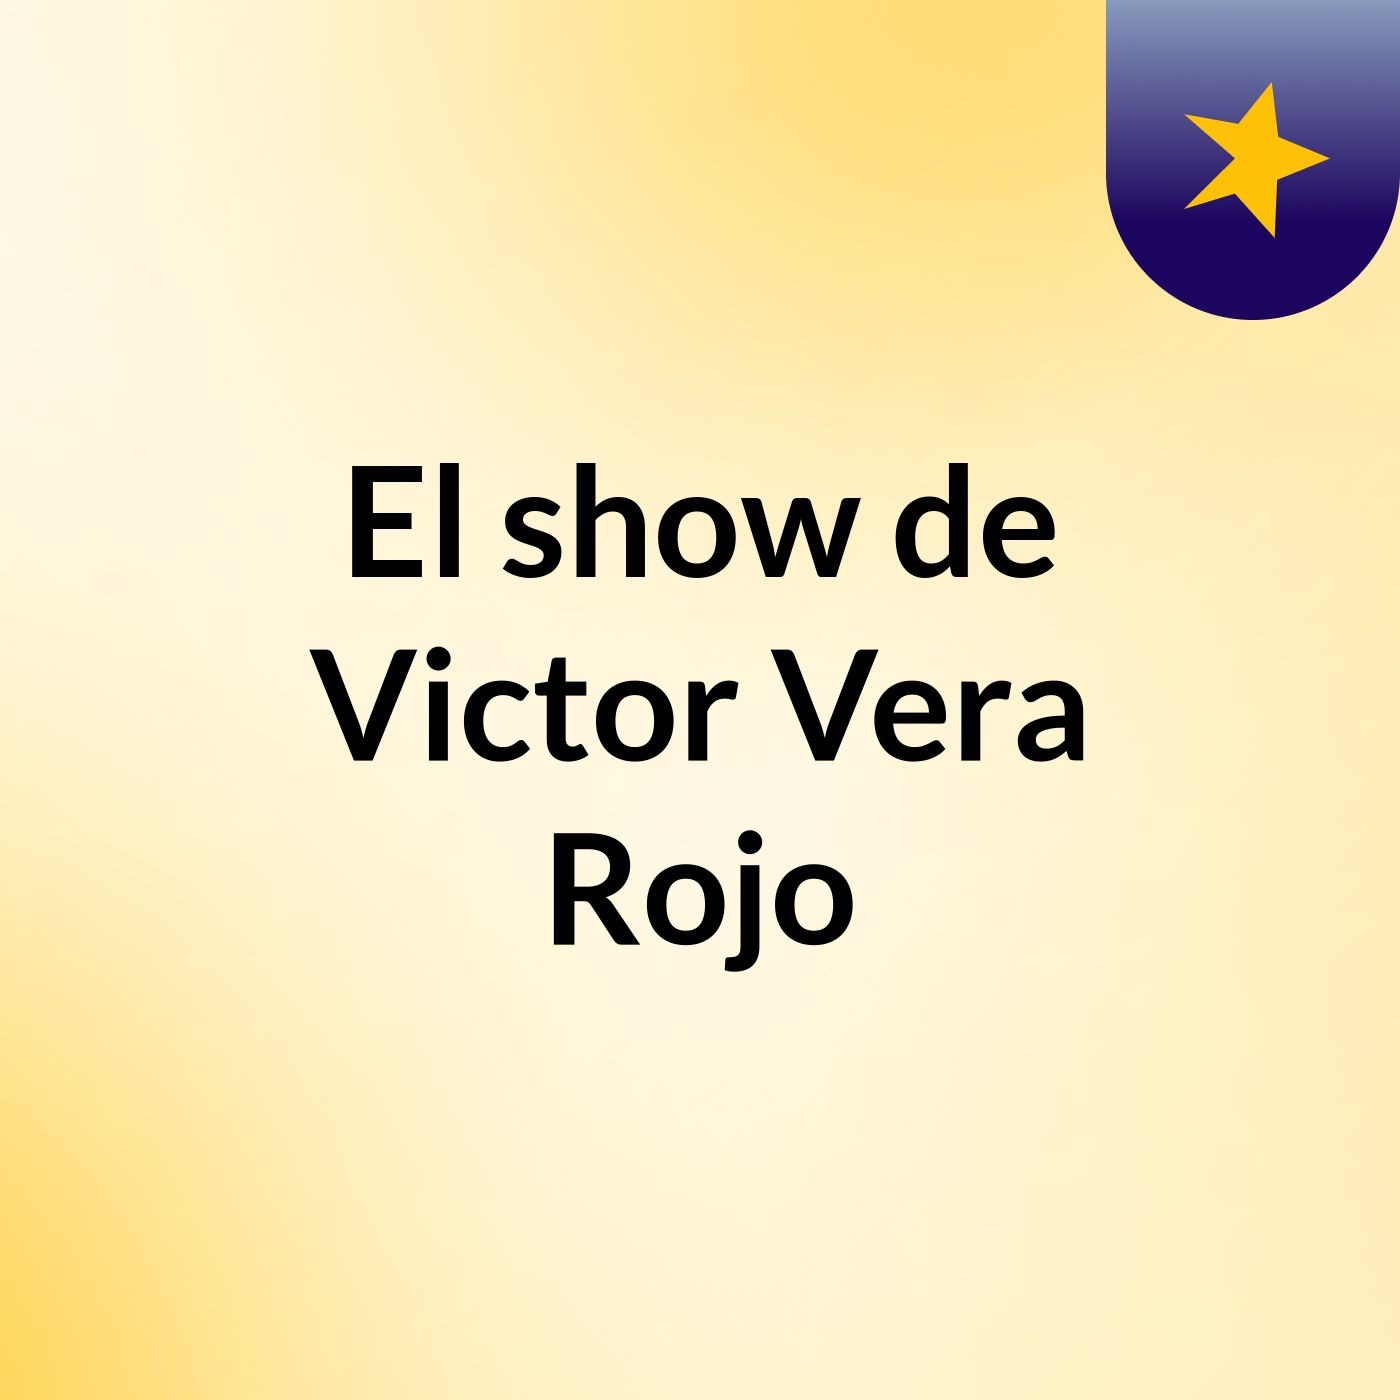 Episodio 3 - El show de Victor Vera Rojo